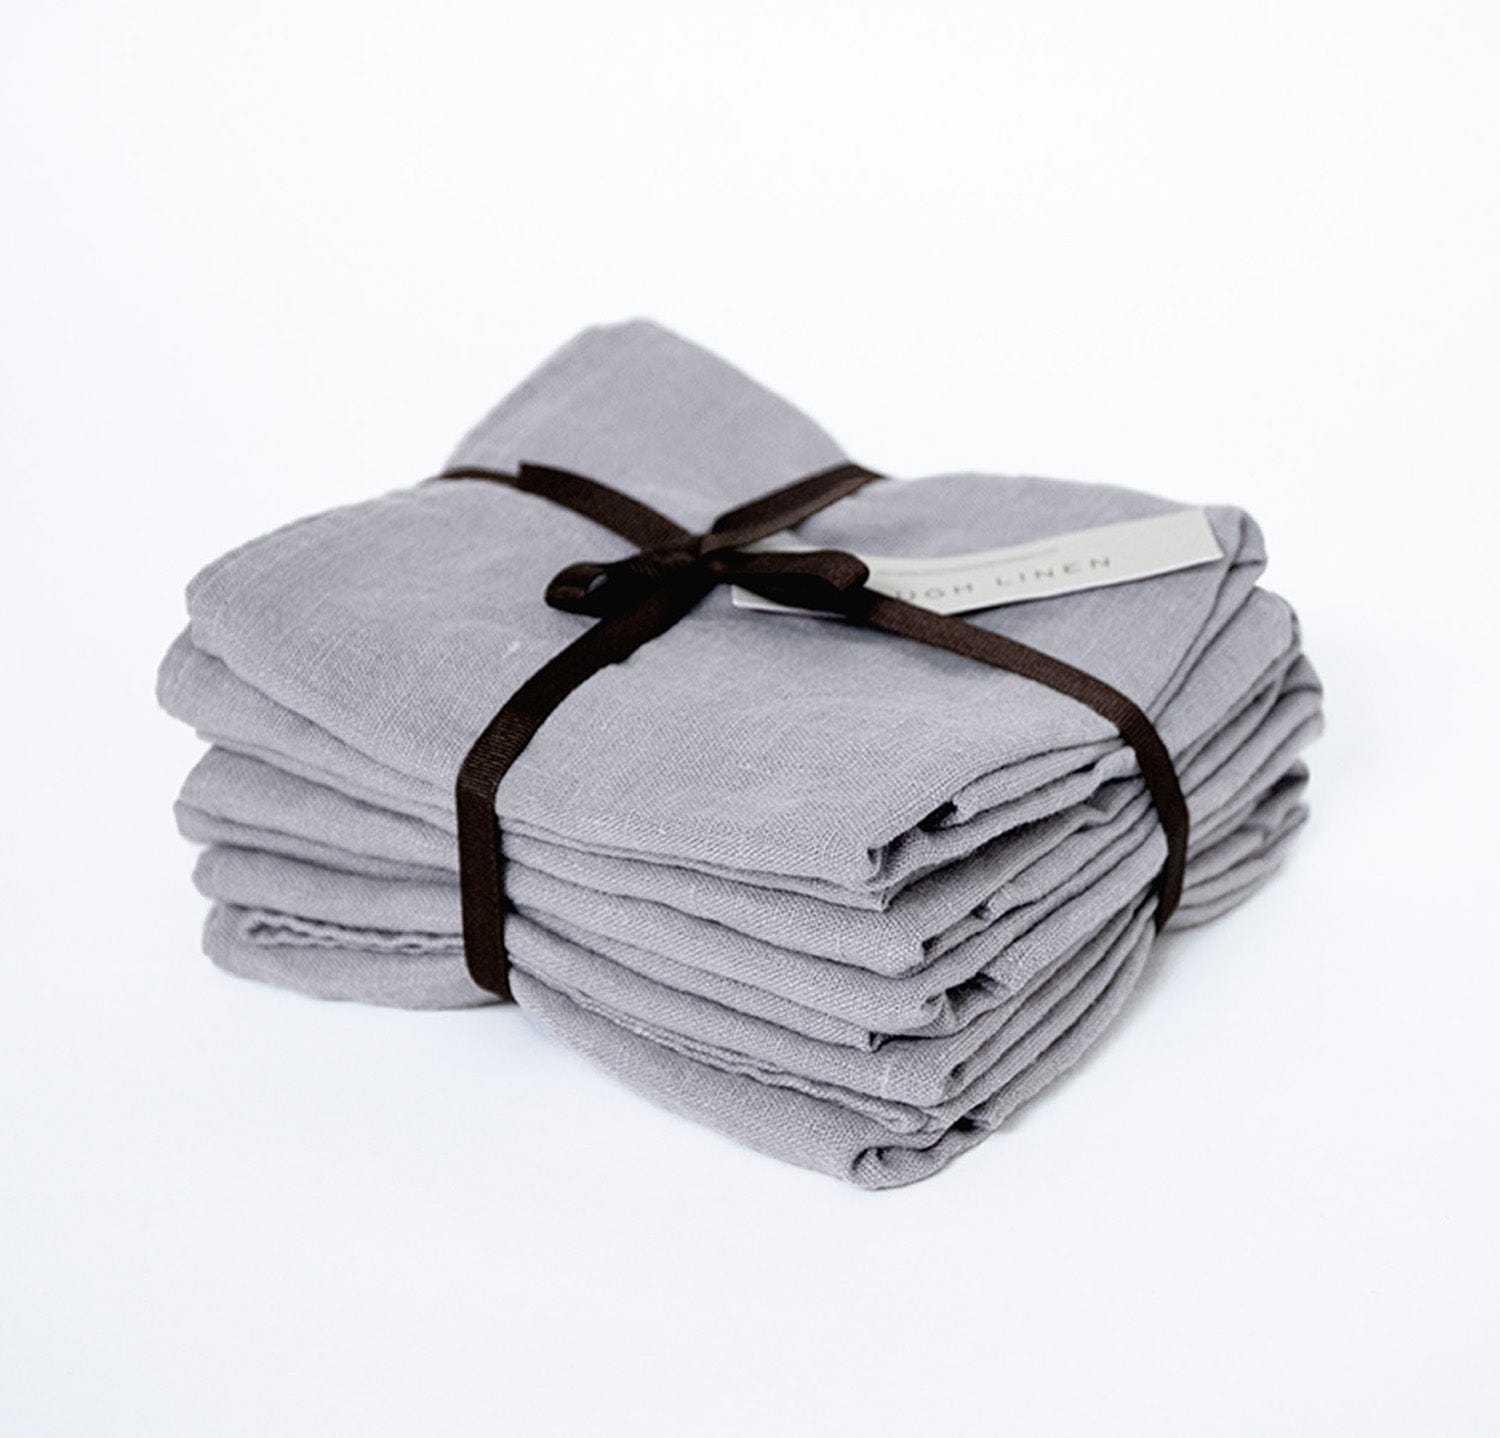 Orkney Linen Bath Sheet